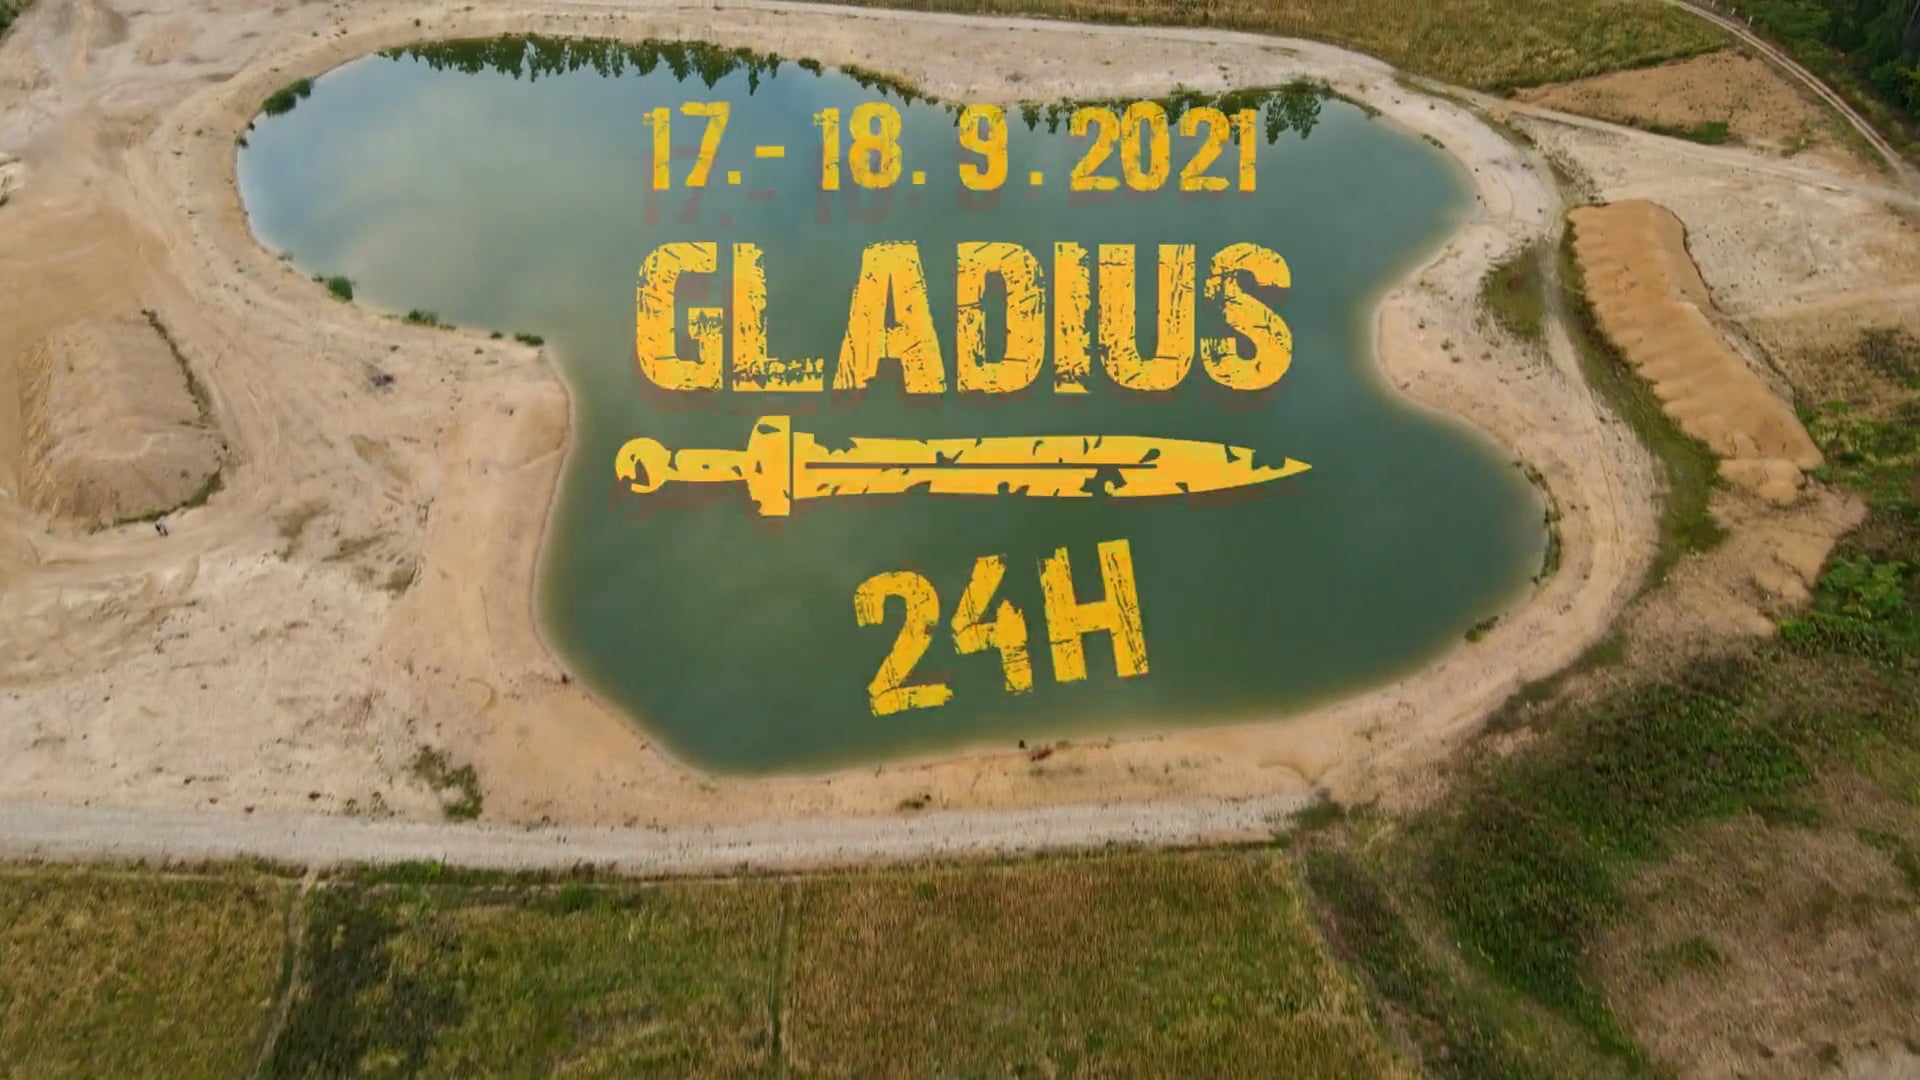 GLADIUS 24 | First one in Czech Republic